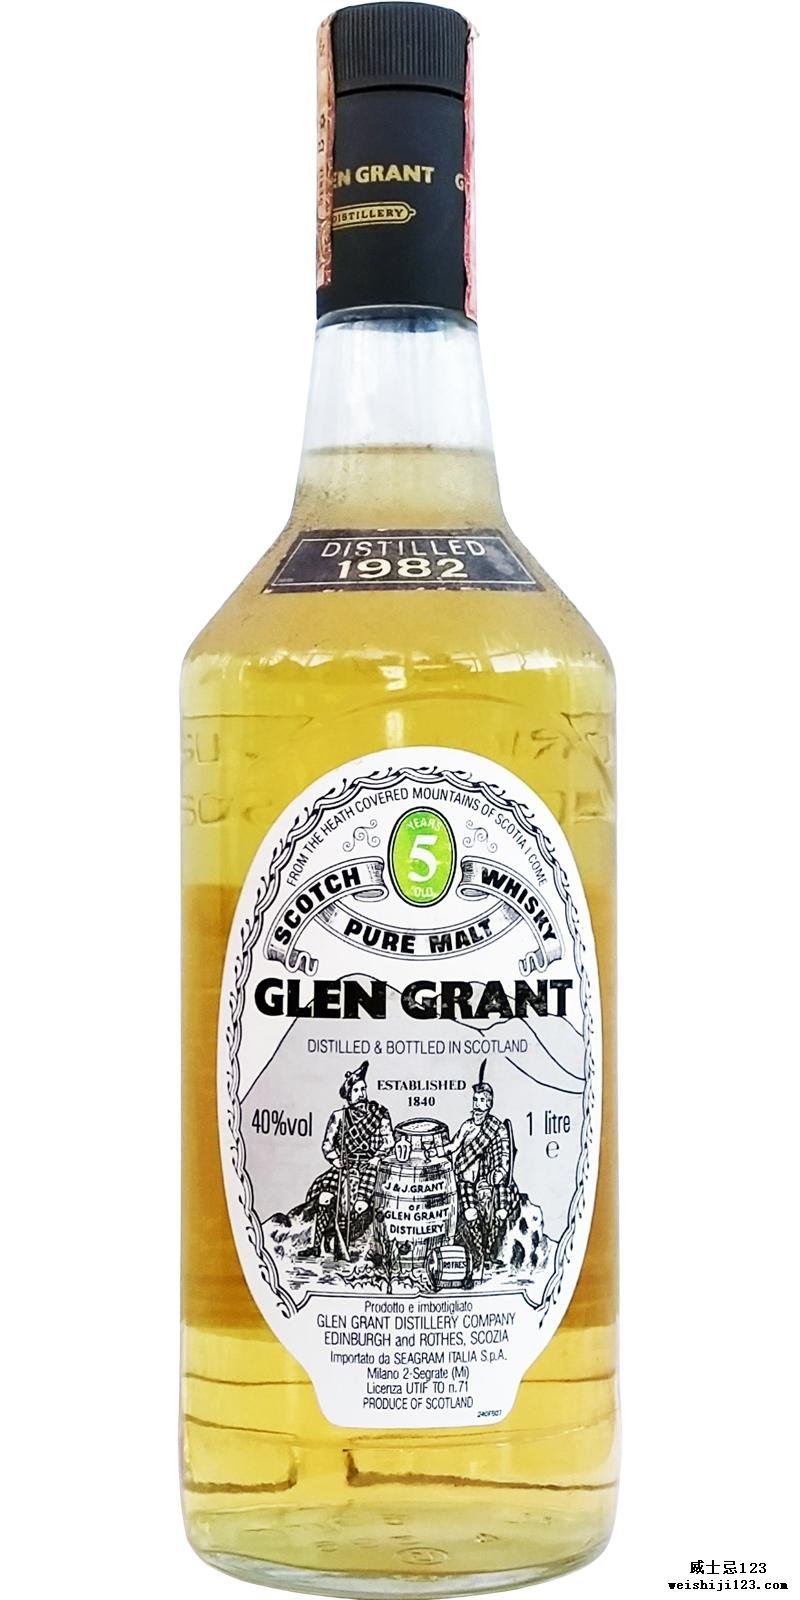 Glen Grant 1982